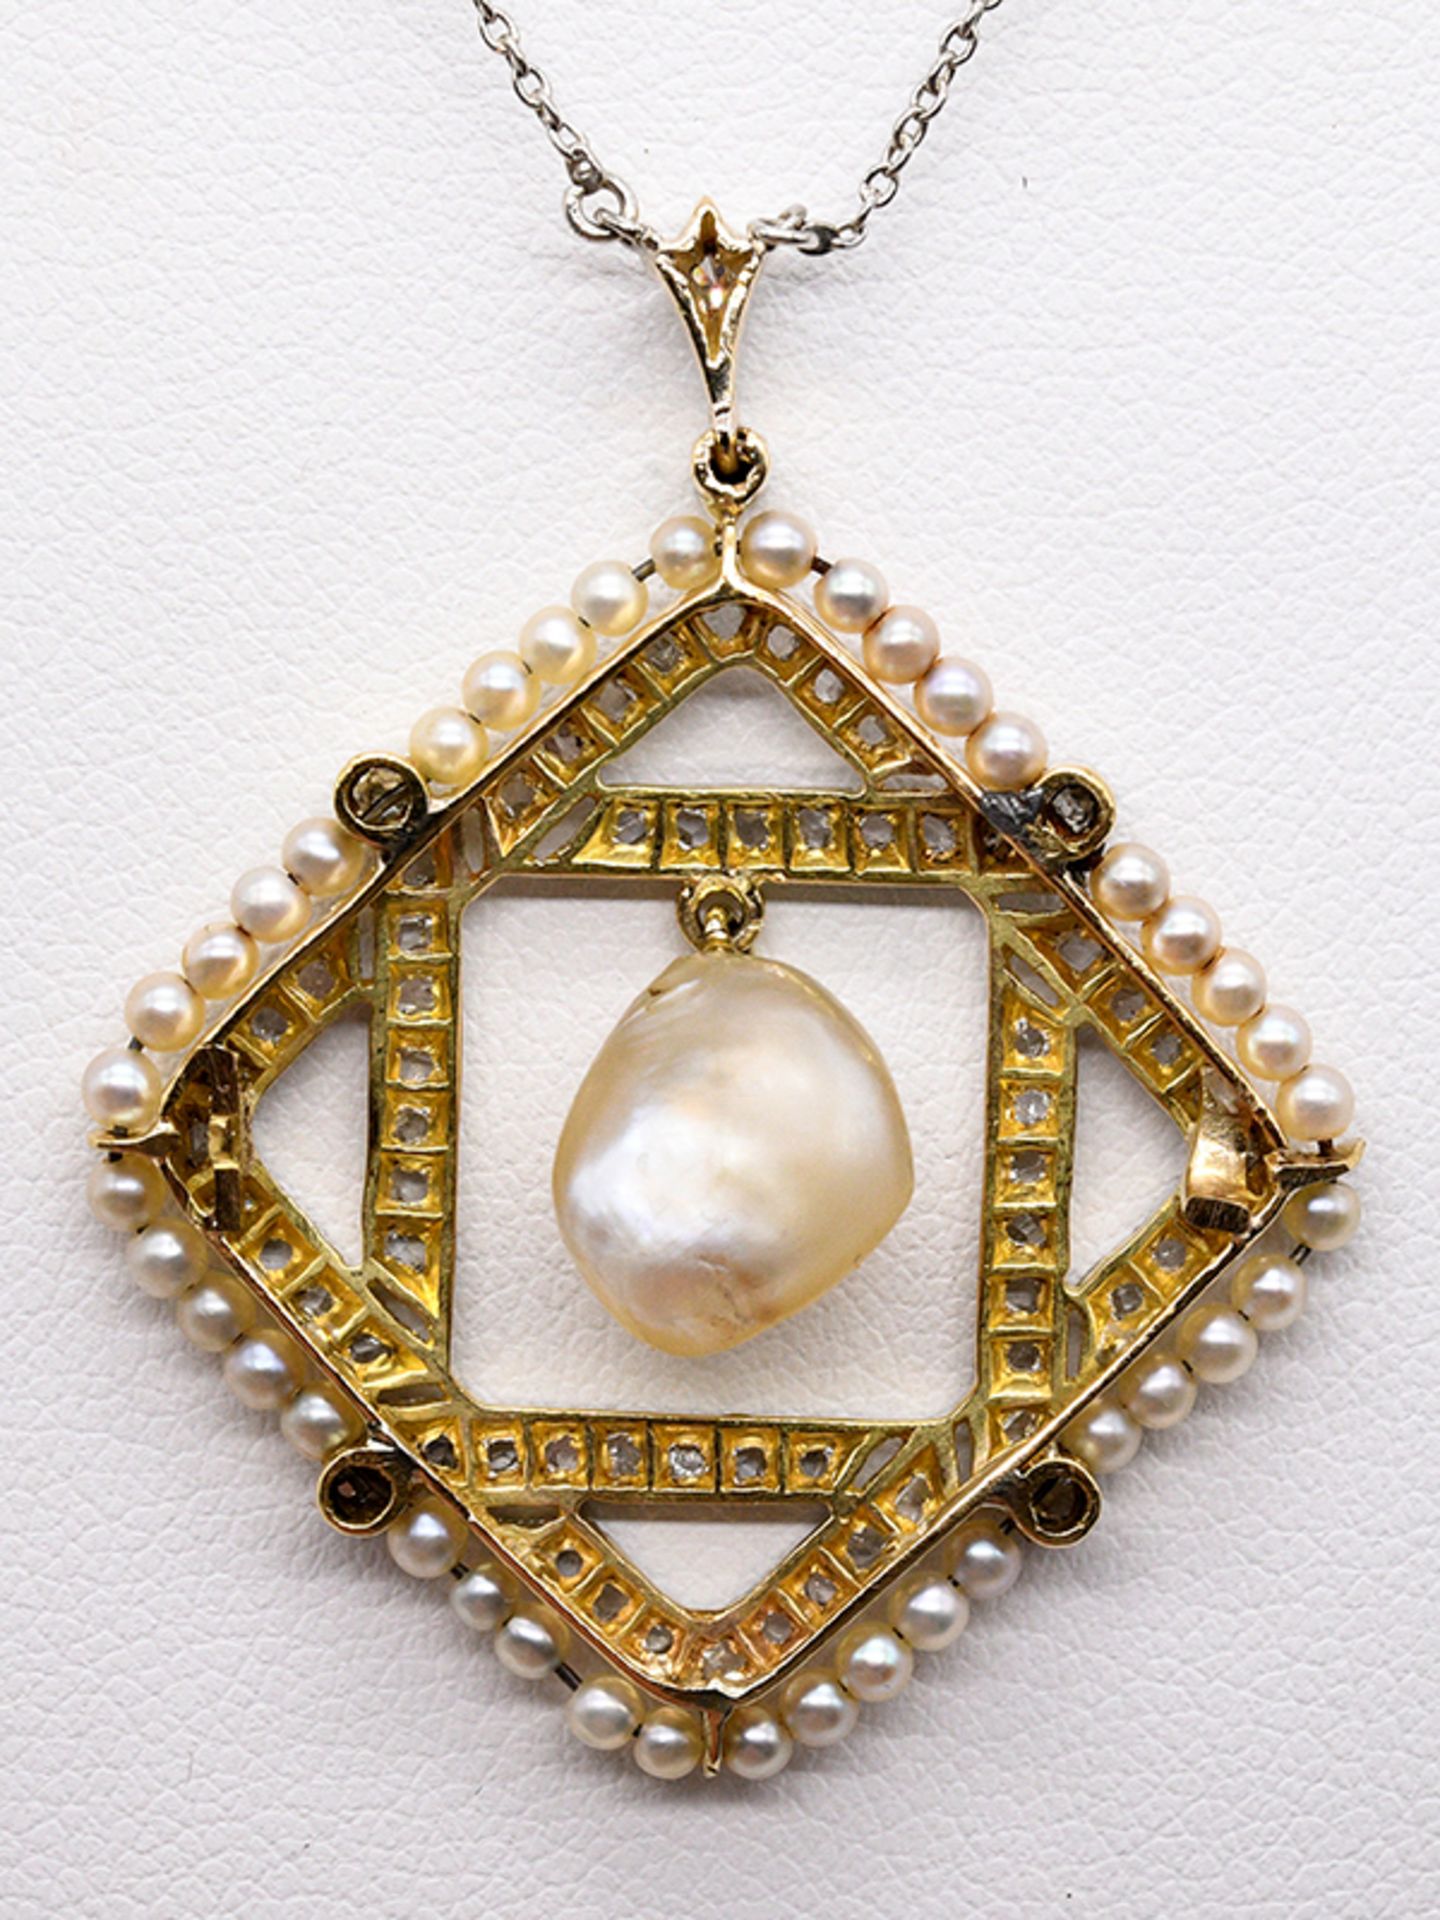 Collier mit Orientperlen und Diamanten, zusammen ca. 0,25 ct, um 1900. 750/- Gelbgold und plati - Bild 3 aus 4